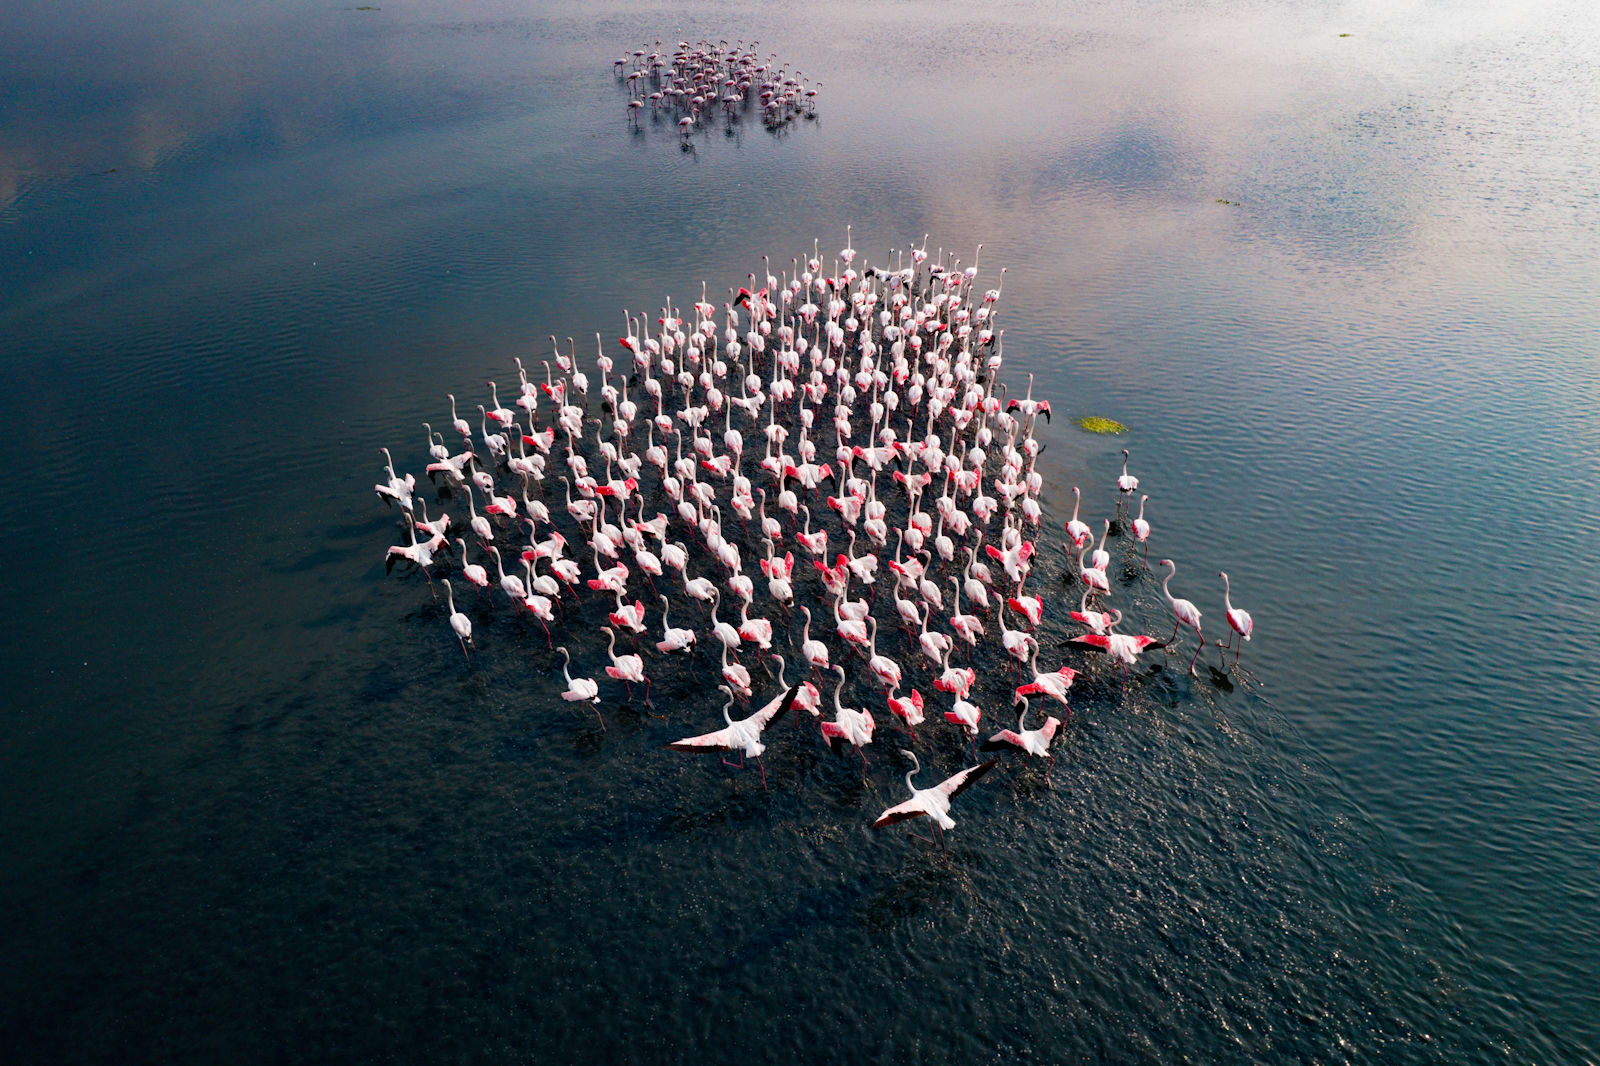 مصور يوثق "جيشًا ورديًا" يخطف الأبصار في بحيرة هندية